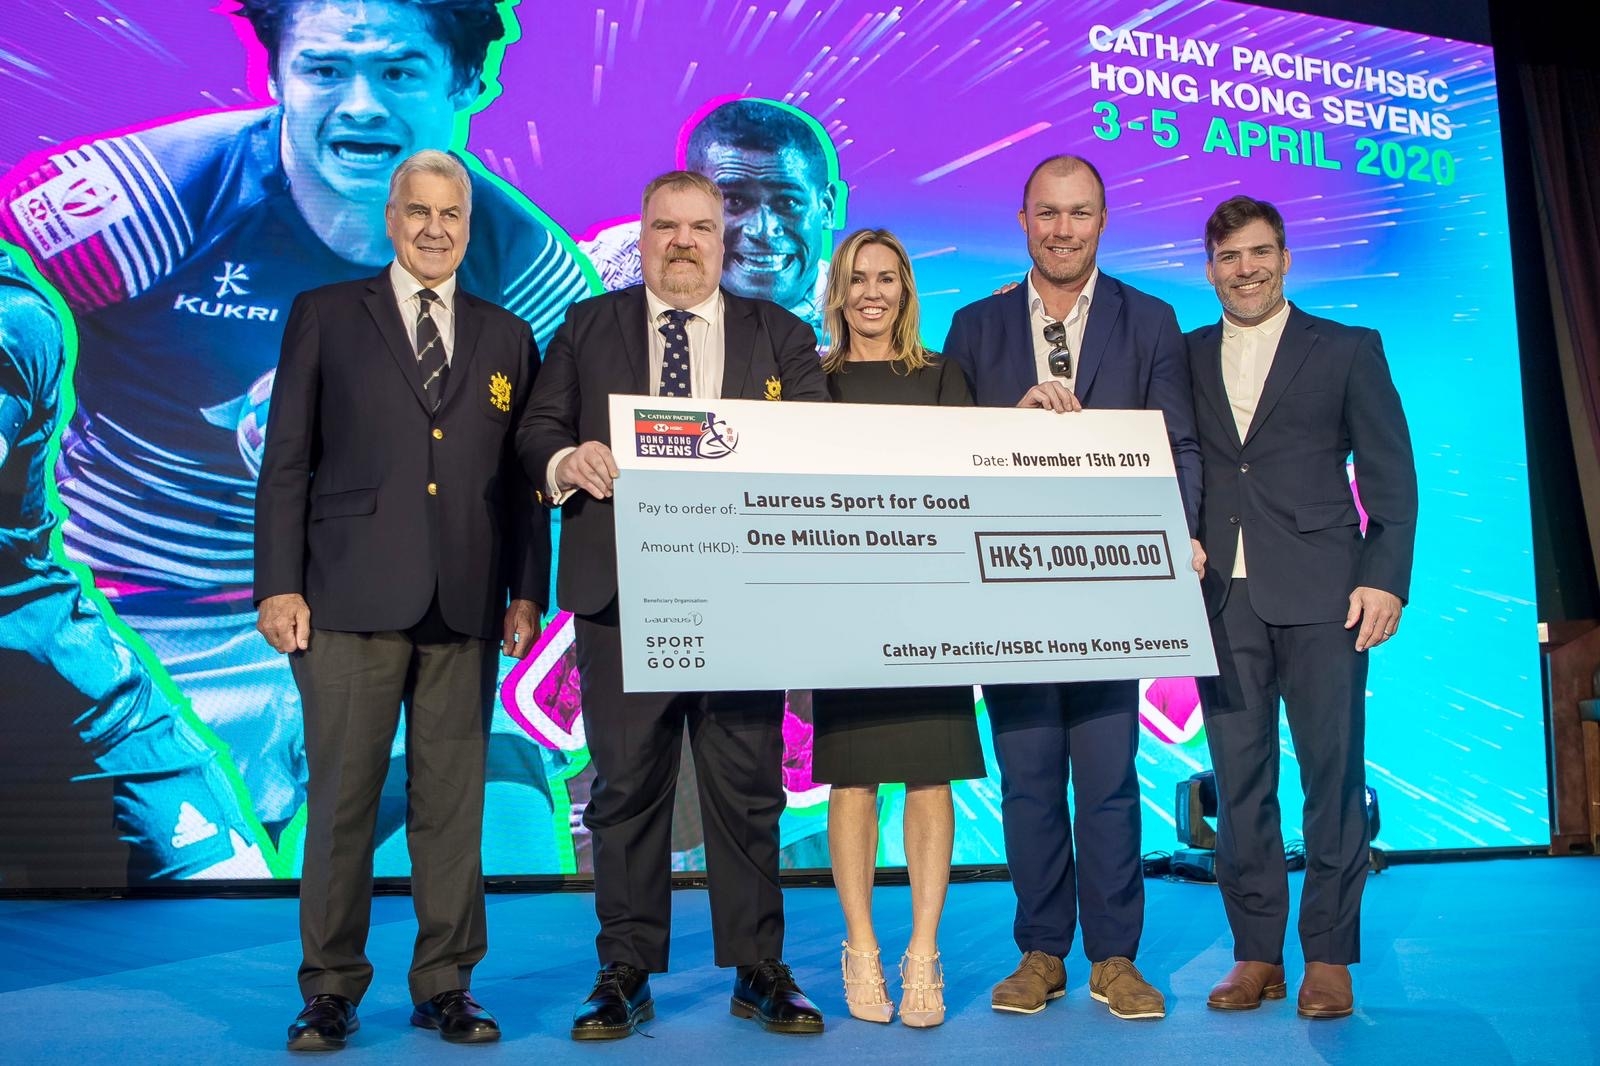 國泰航空/滙豐香港國際七人欖球賽與勞倫斯慈善合作夥伴關係延至2023年